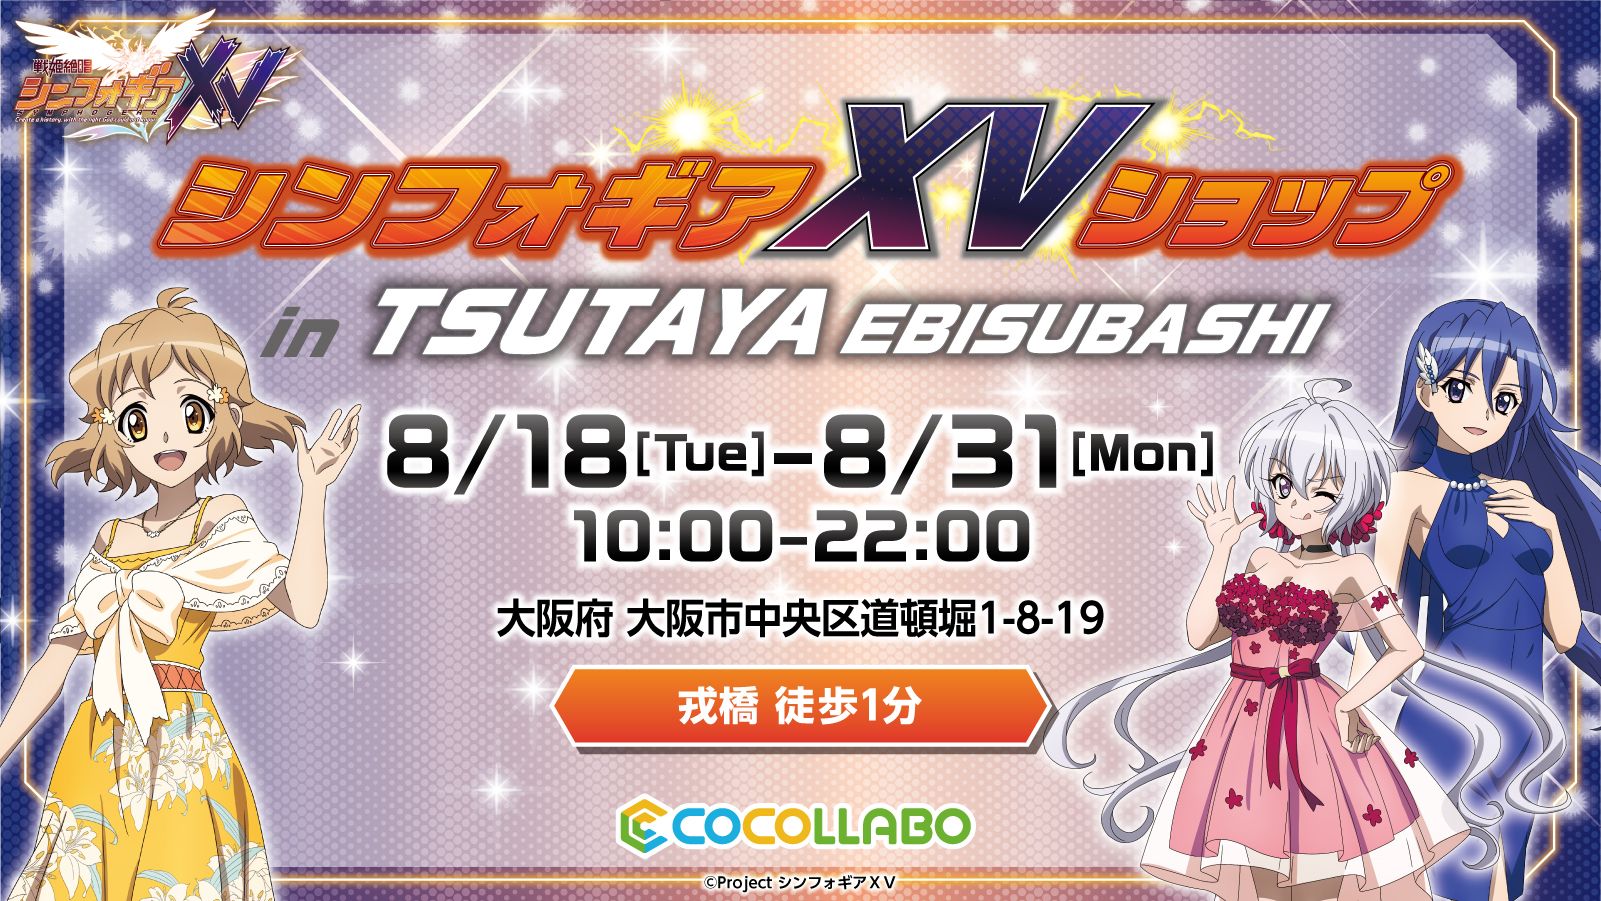 戦姫絶唱シンフォギアｘｖ を記念したオンリーショップが Tsutaya Ebisubashi にて8月18日 火 より開催 Newscast